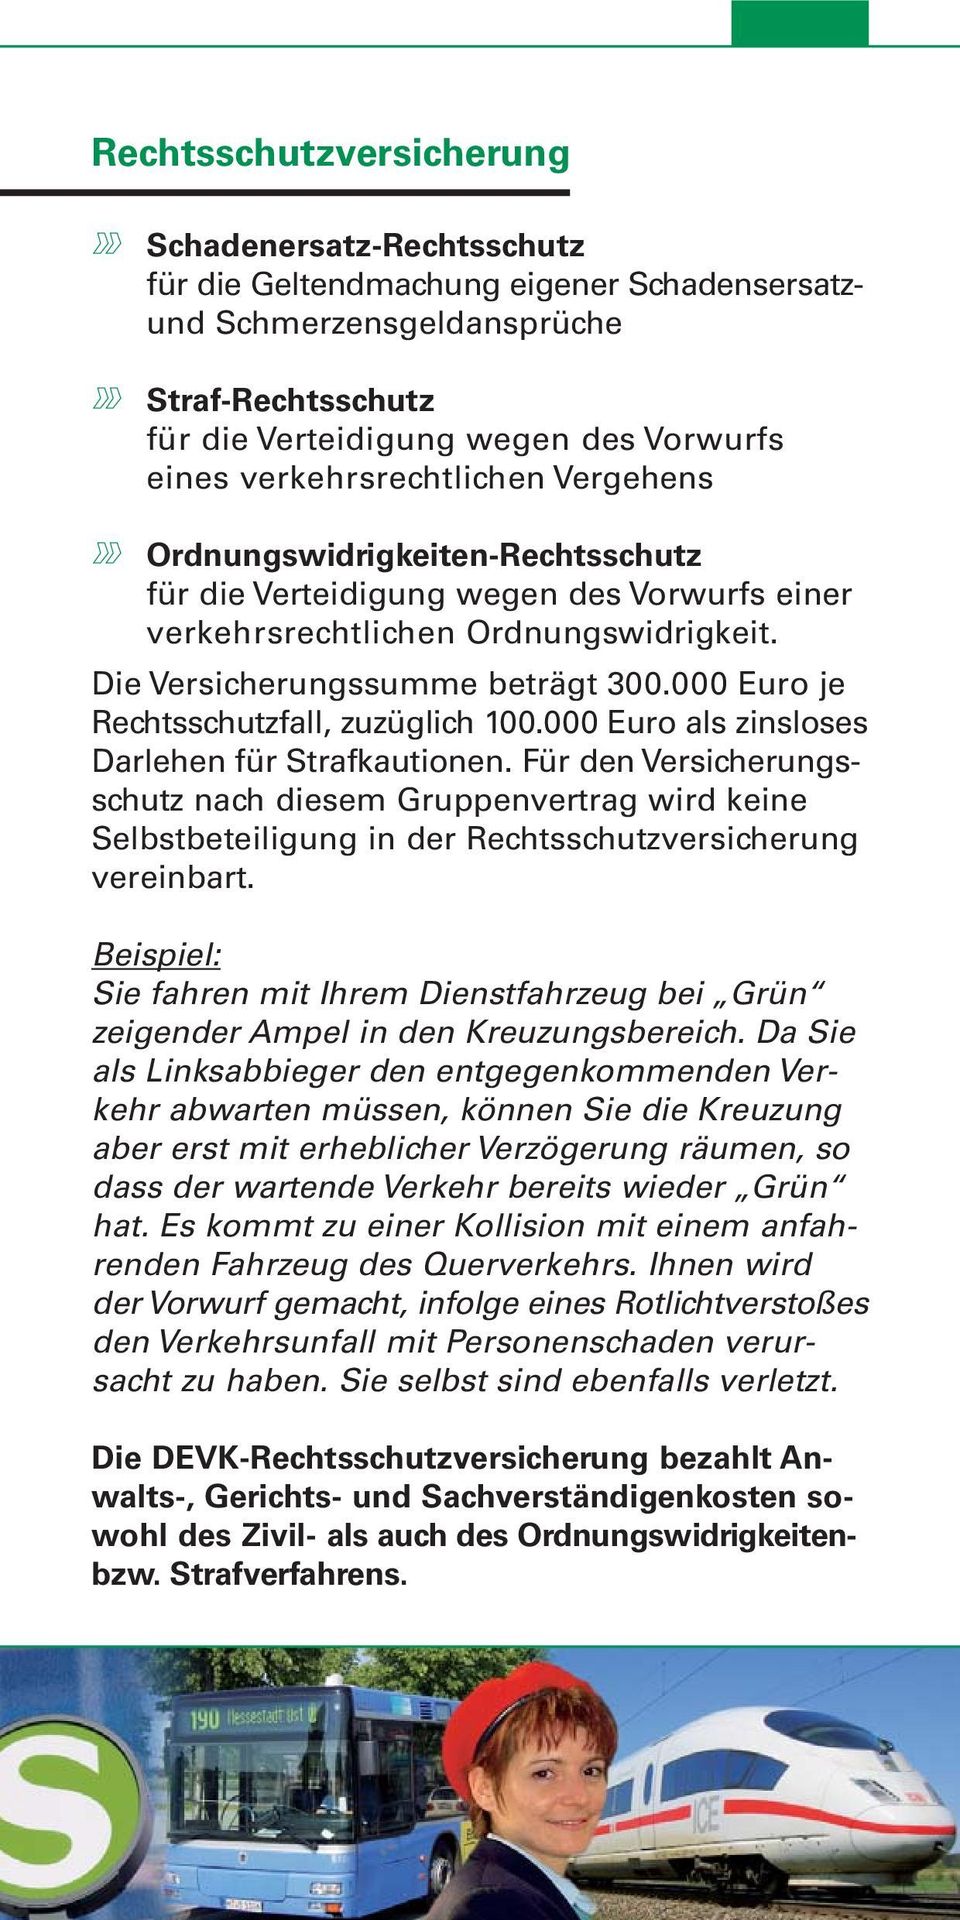 000 Euro je Rechtsschutzfall, zuzüglich 100.000 Euro als zinsloses Darlehen für Strafkautionen.